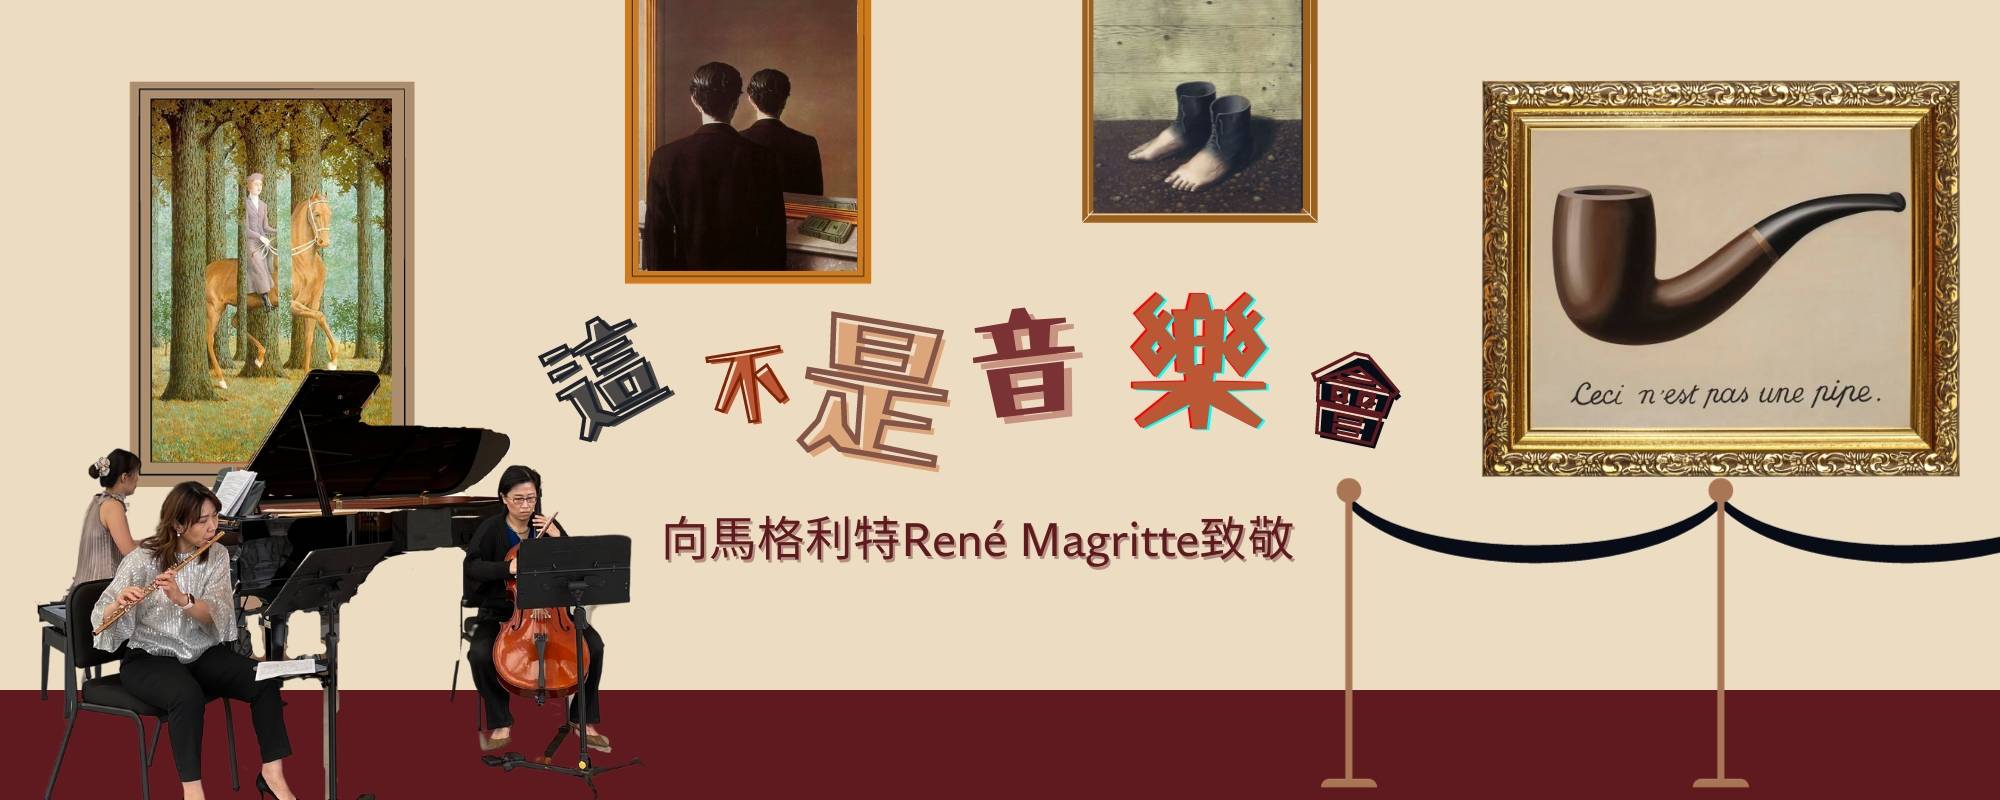 《這不是 音樂  會》向雷內．馬格利特René Magritte致敬